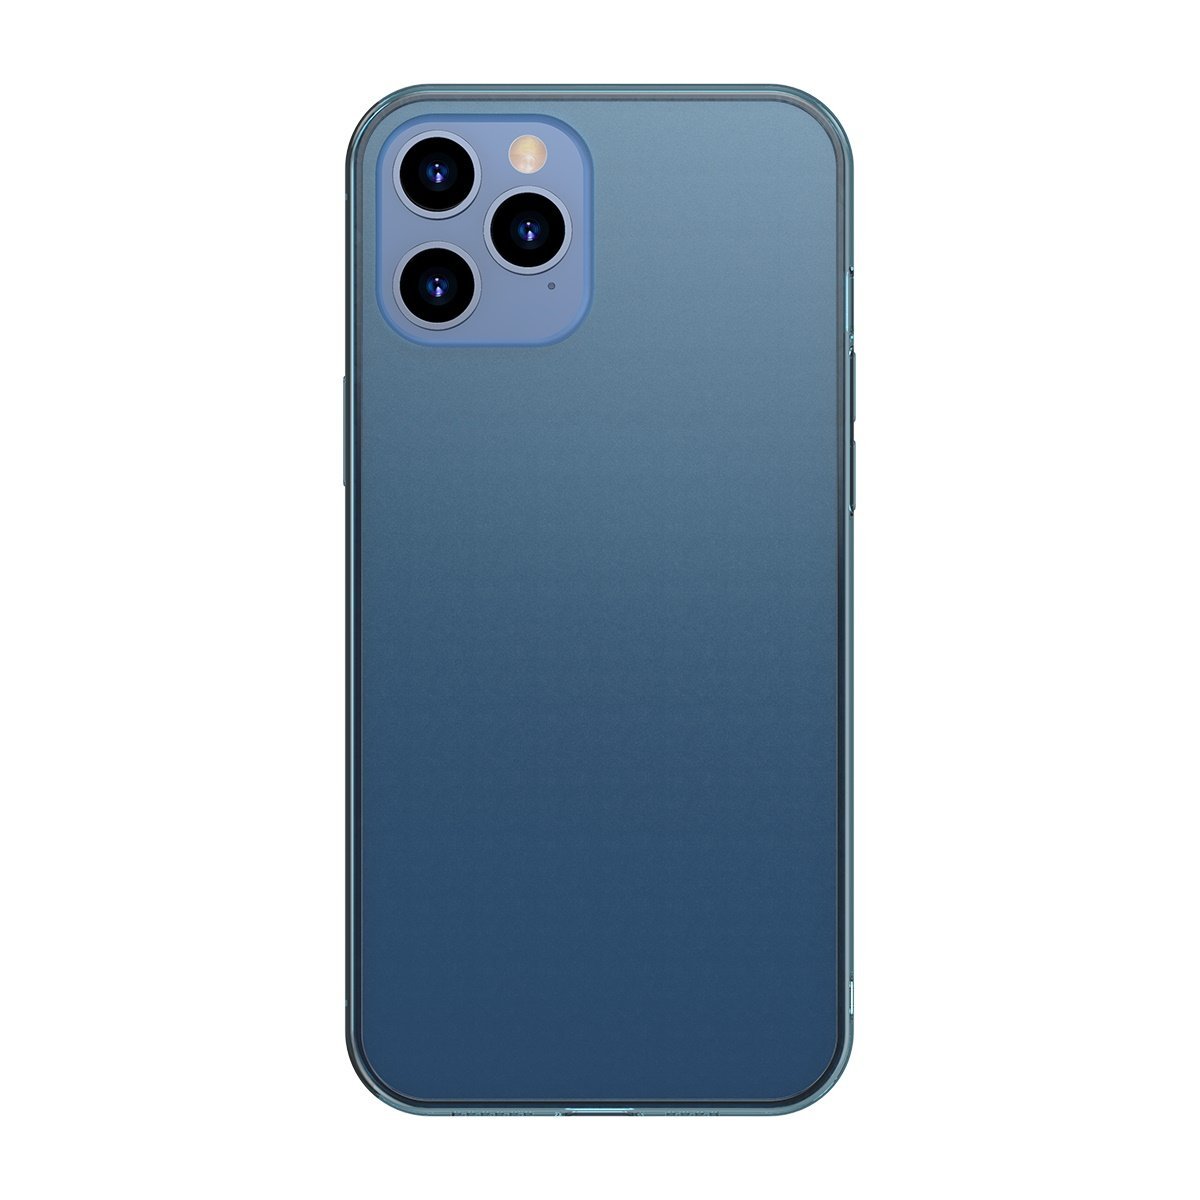 Husa pentru Apple iPhone 12 Pro Max, Baseus Protective Case, Albastru, 6.7 inch 6.7 imagine noua idaho.ro